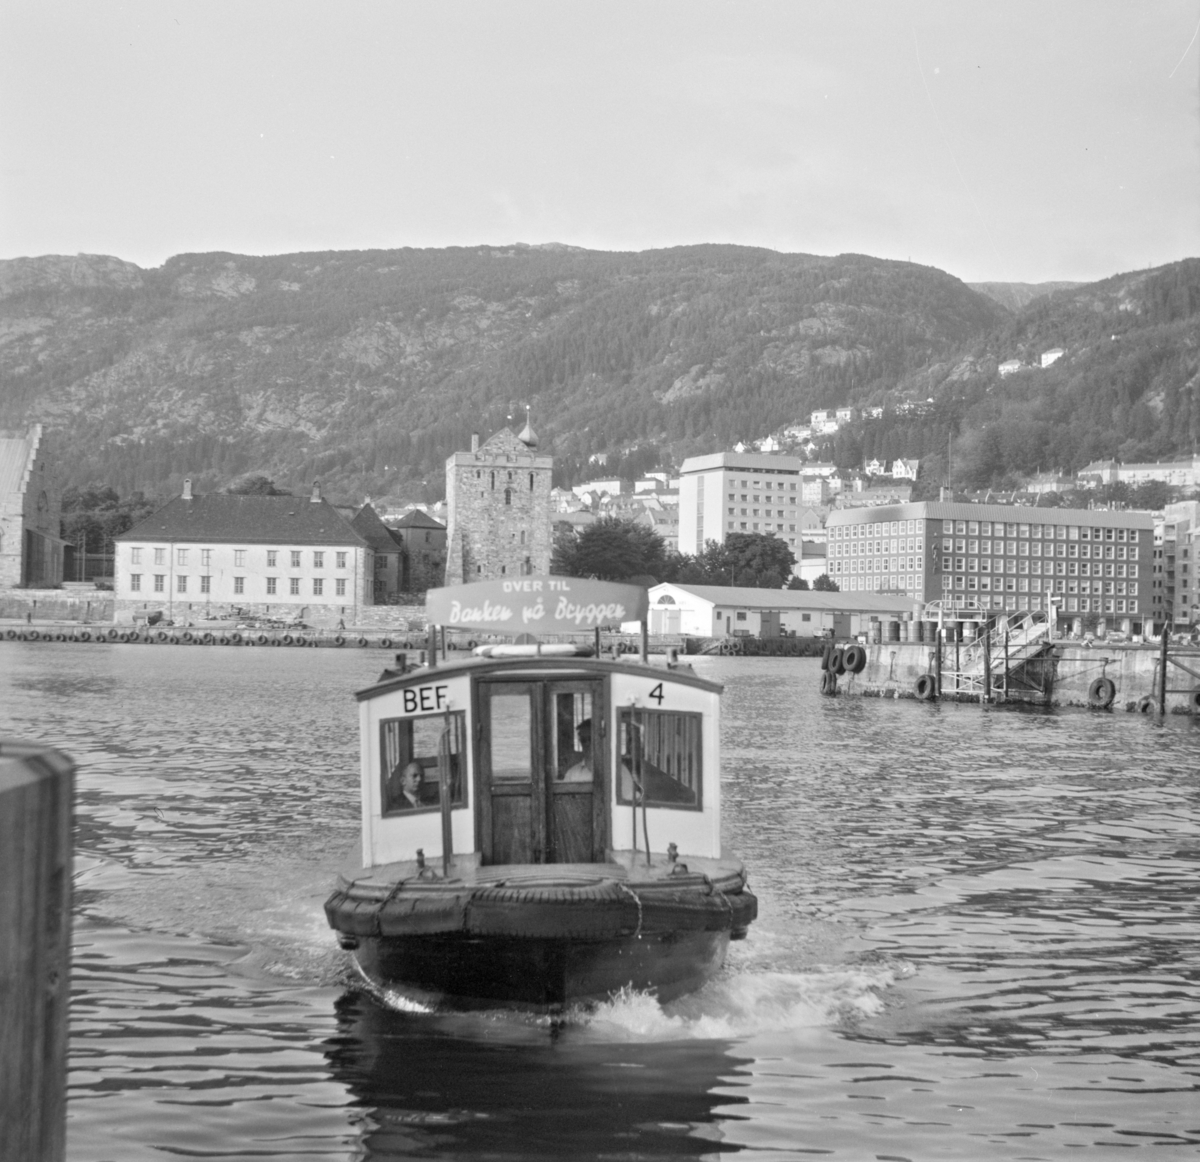 MF "Beffen", B.E.F. 4 på Vågen i Bergen